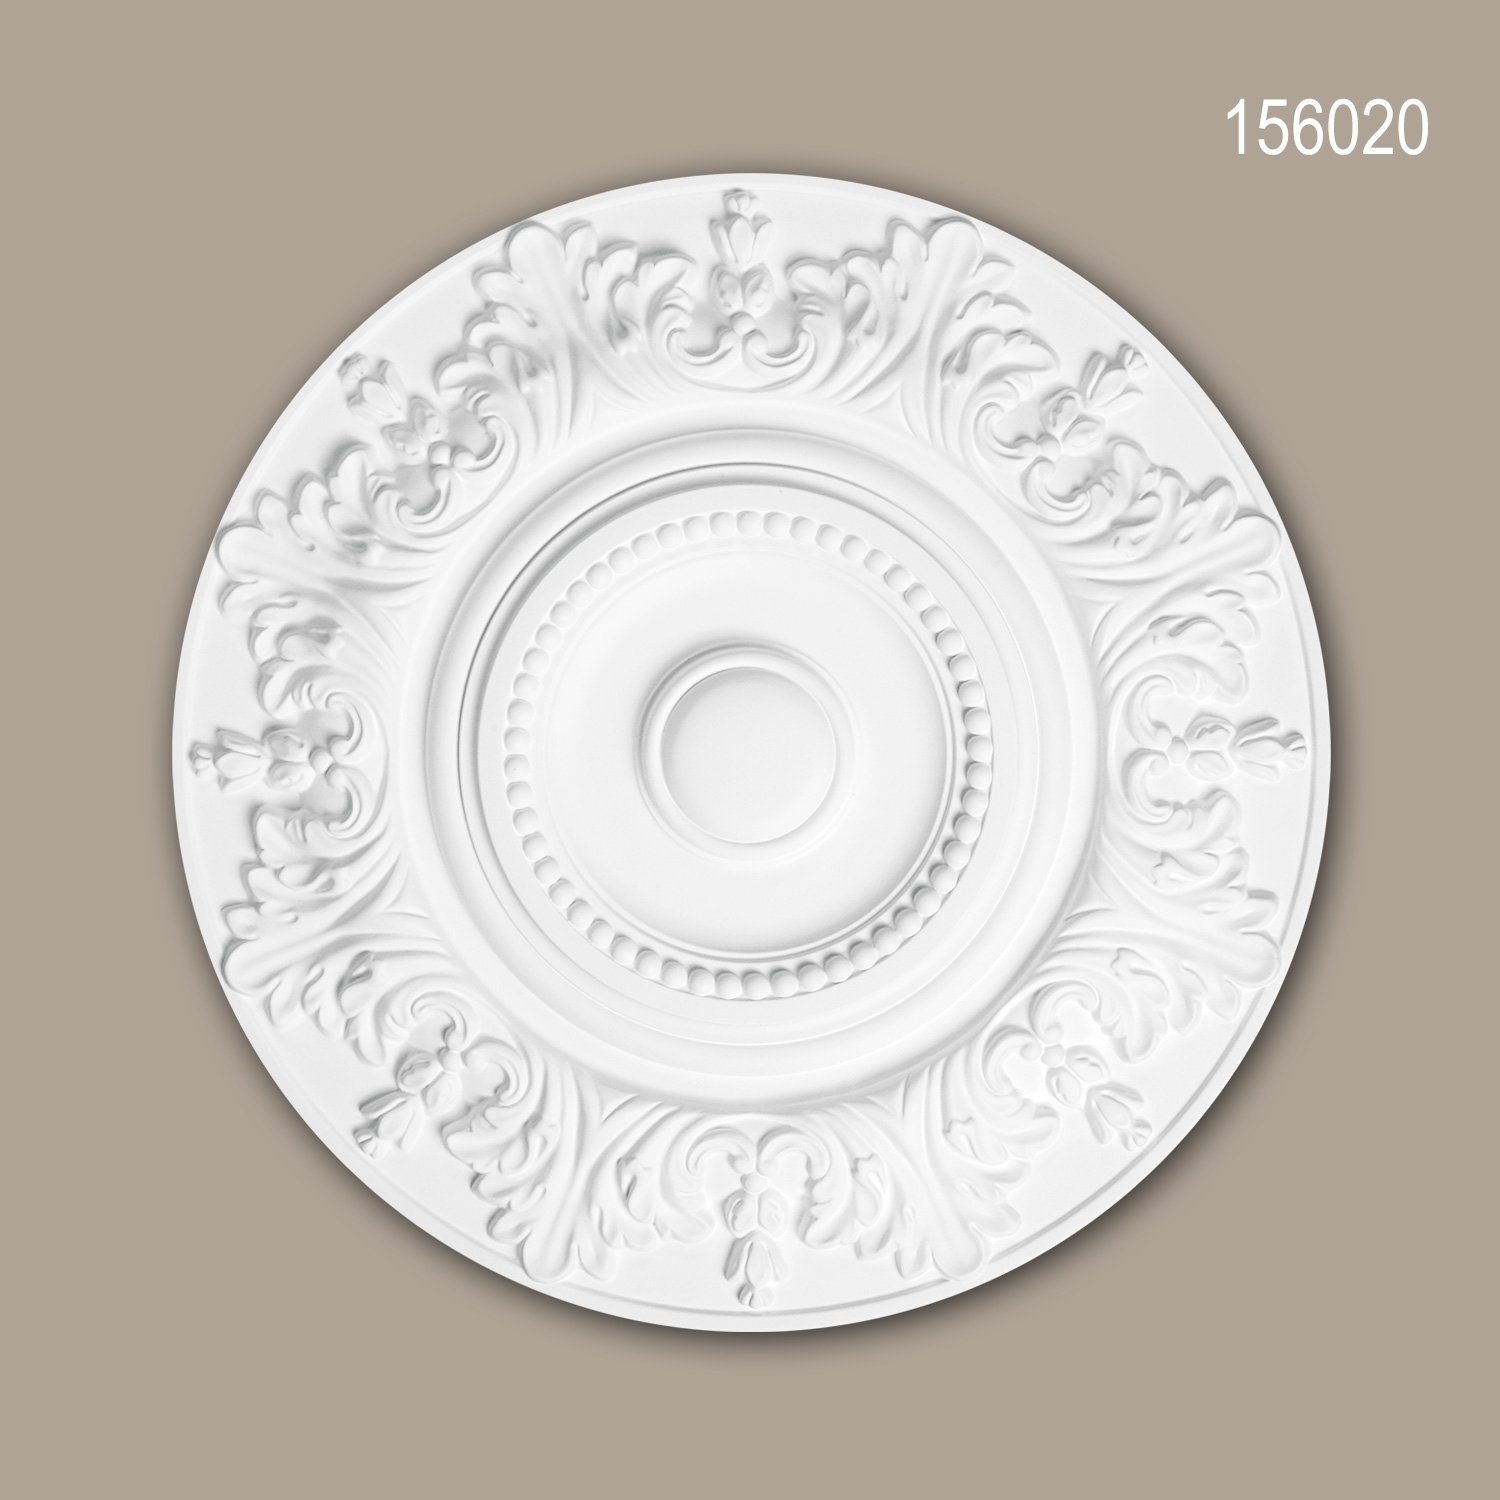 Profhome Decken-Rosette 156020 (Rosette, 1 St., Deckenrosette, Medallion, Stuckrosette, Deckenelement, Zierelement, Durchmesser 47 cm), weiß, vorgrundiert, Stil: Rokoko / Barock | Wandobjekte